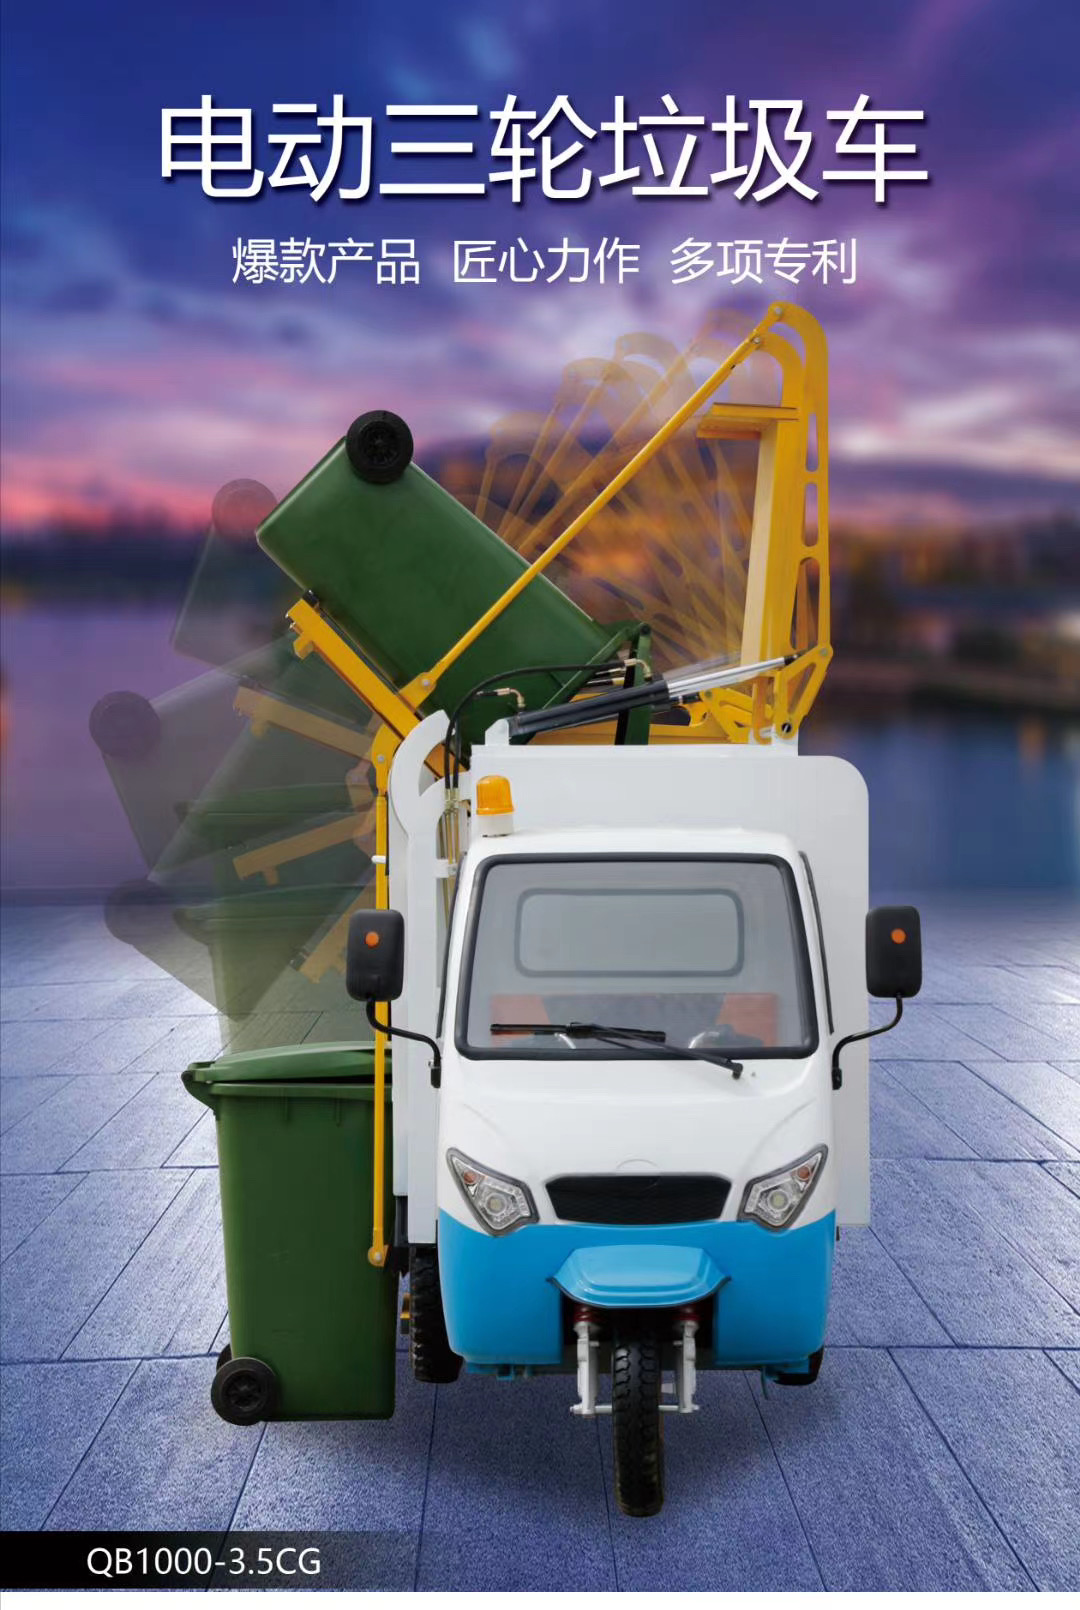 蚌埠電動電動垃圾車-垃圾清運車-電動環衛車